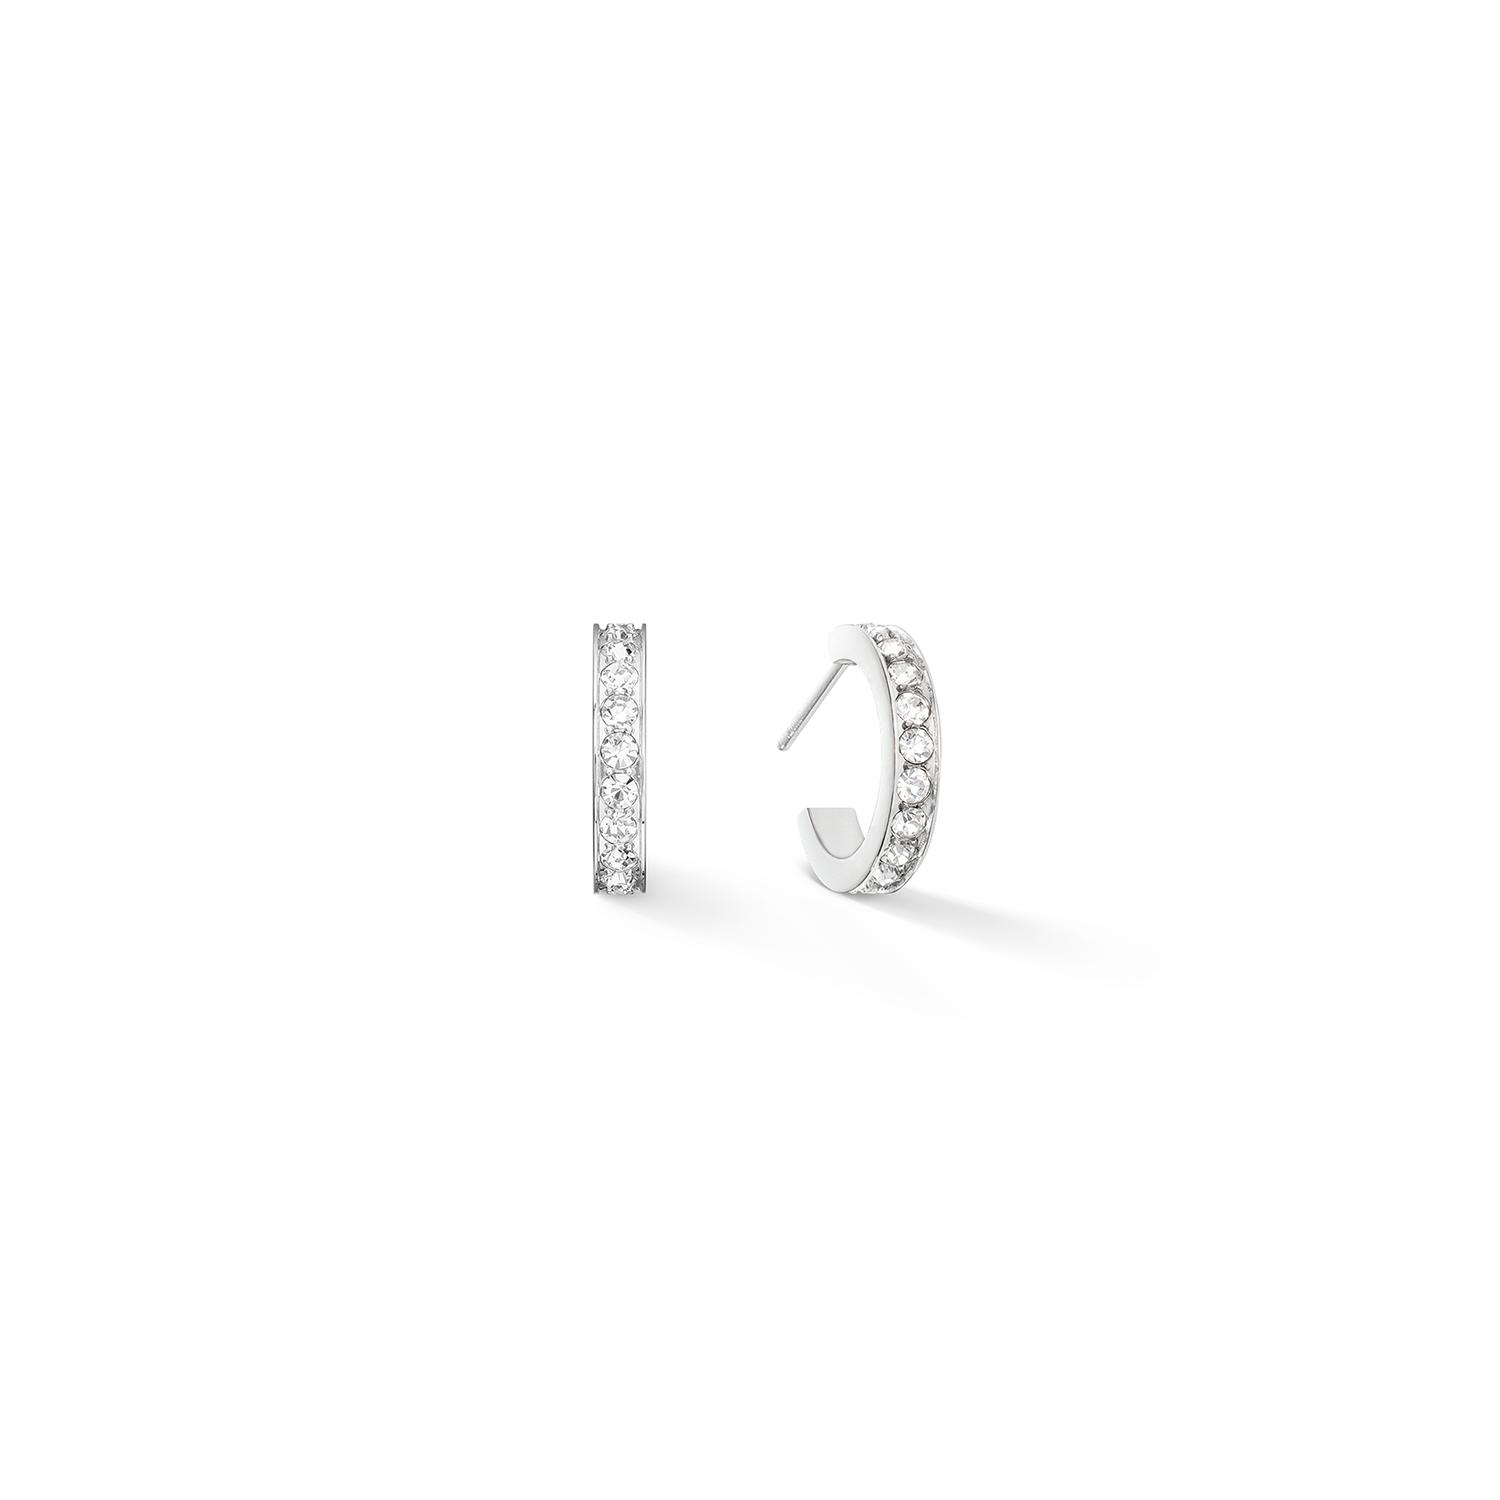 Hoop Wide Silver & Crystal Pavé Small Earrings 0127/21_1817